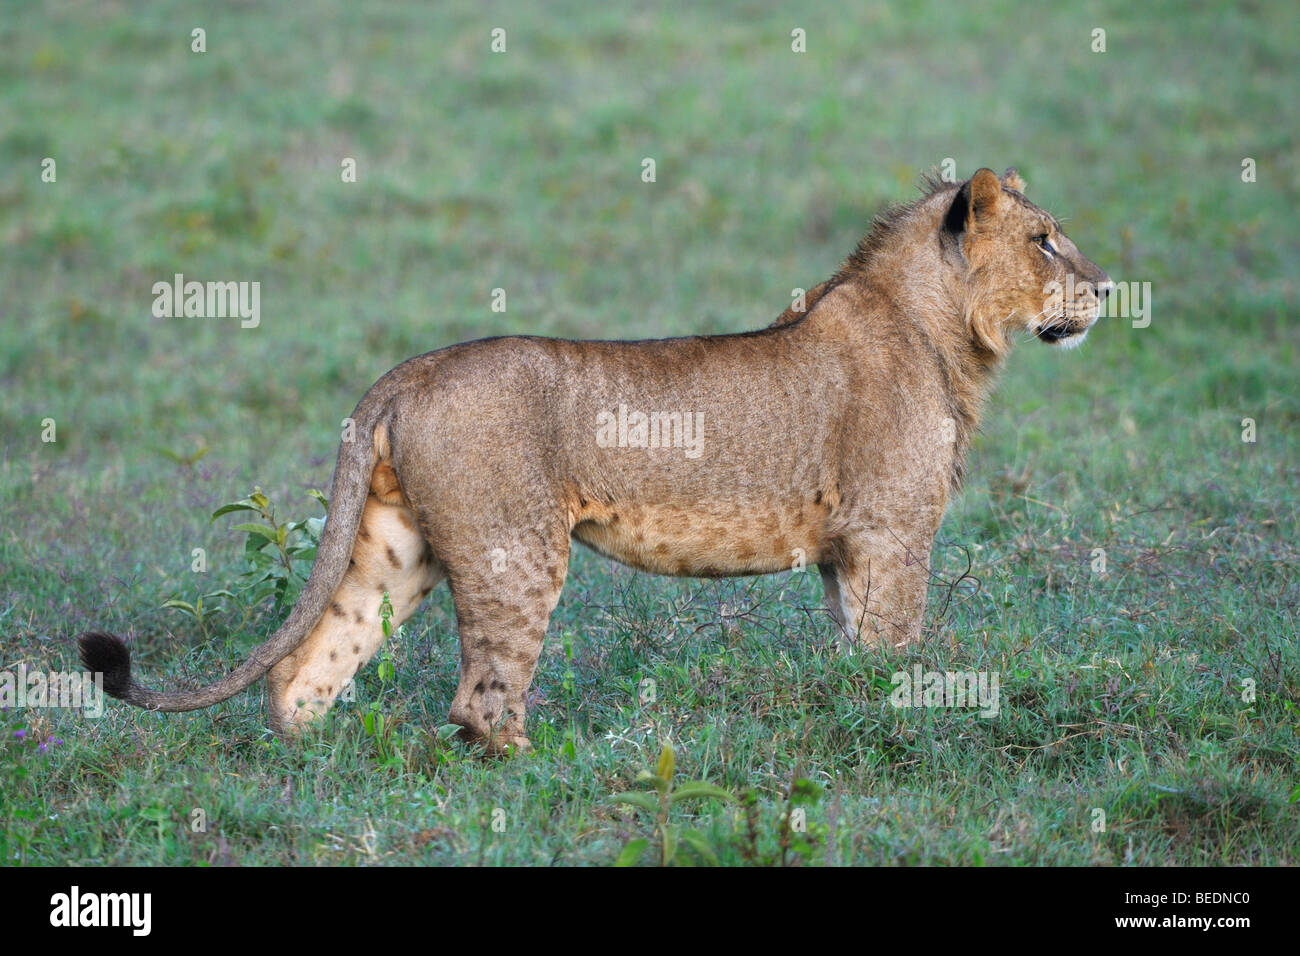 Lion (Panthera leo), le lac Nakuru, parc national, Kenya, Afrique de l'Est Banque D'Images